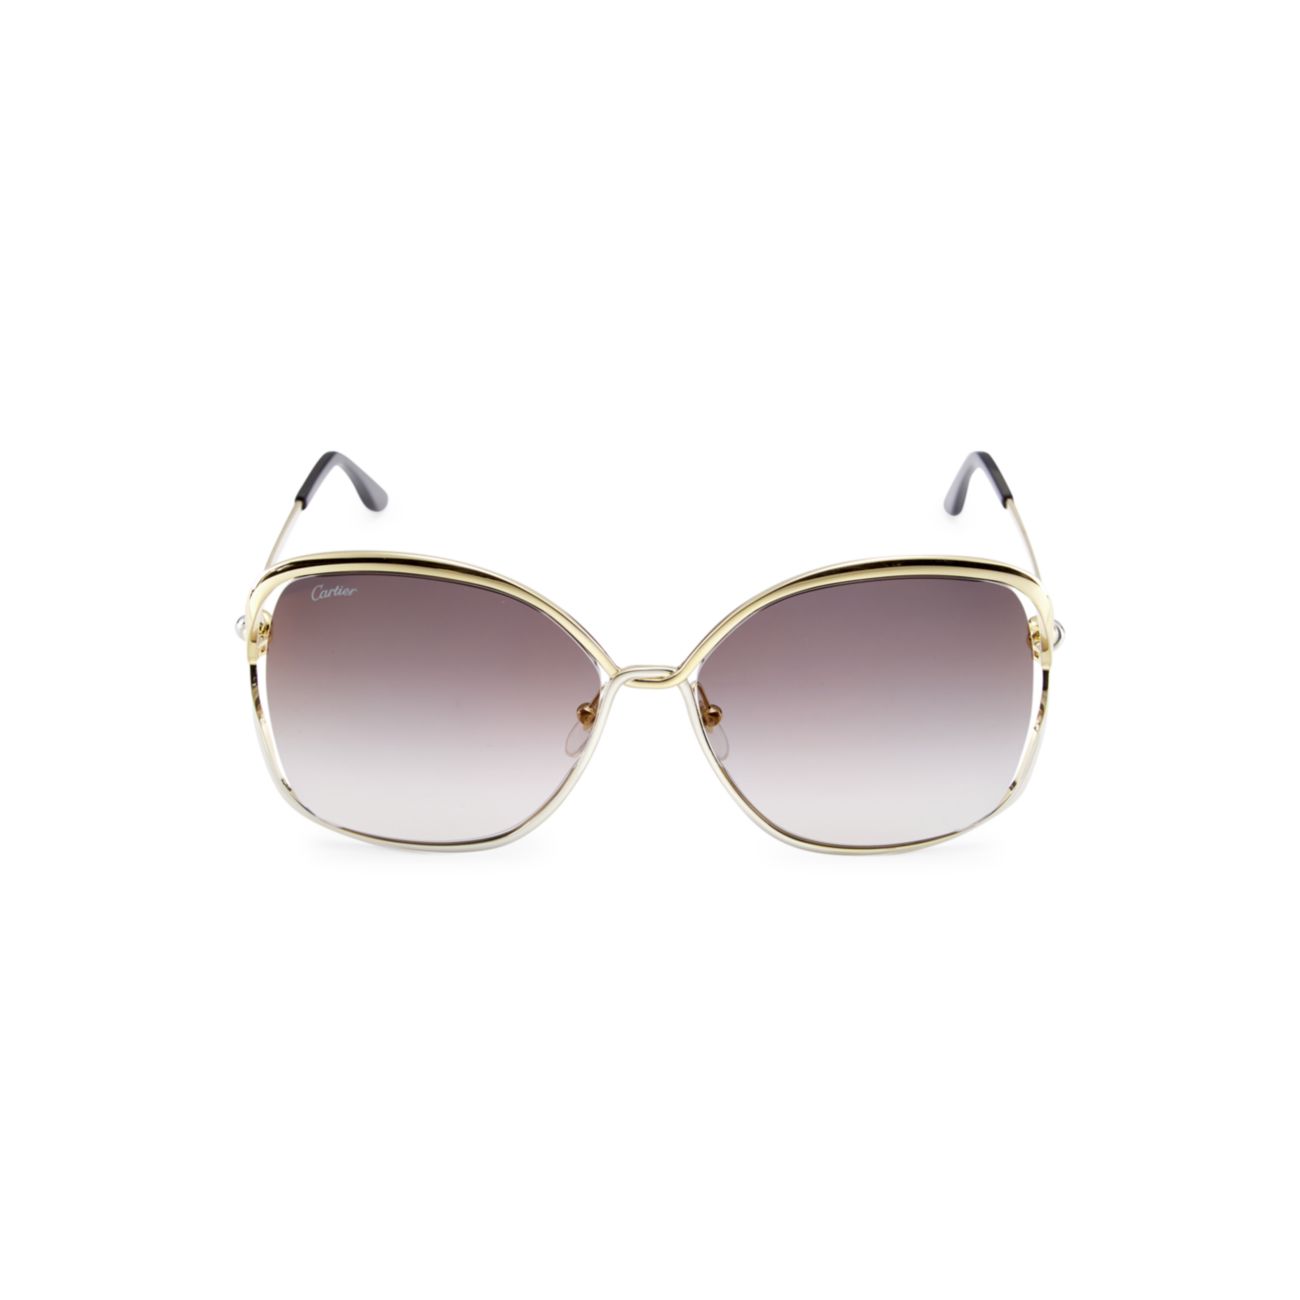 Круглые солнцезащитные очки 60 мм Cartier